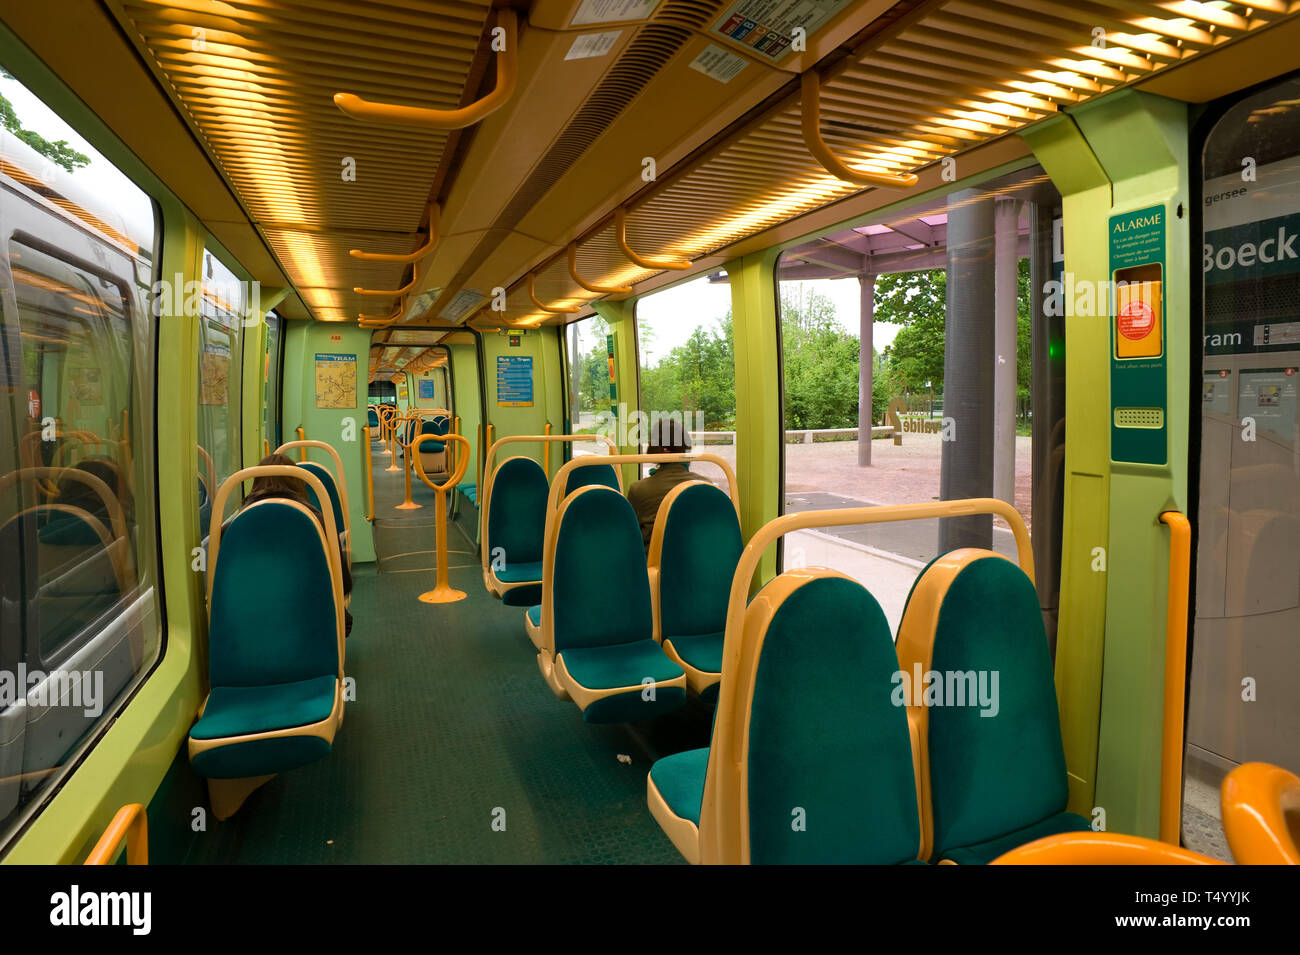 Straßburg, moderne Straßenbahn Typ Eurotram, Innenraum; Eurotram ist eine Niederflur-Stra SSenbahn von Bombardier Transportation sterben. Sie ist seit 199 Stockfoto